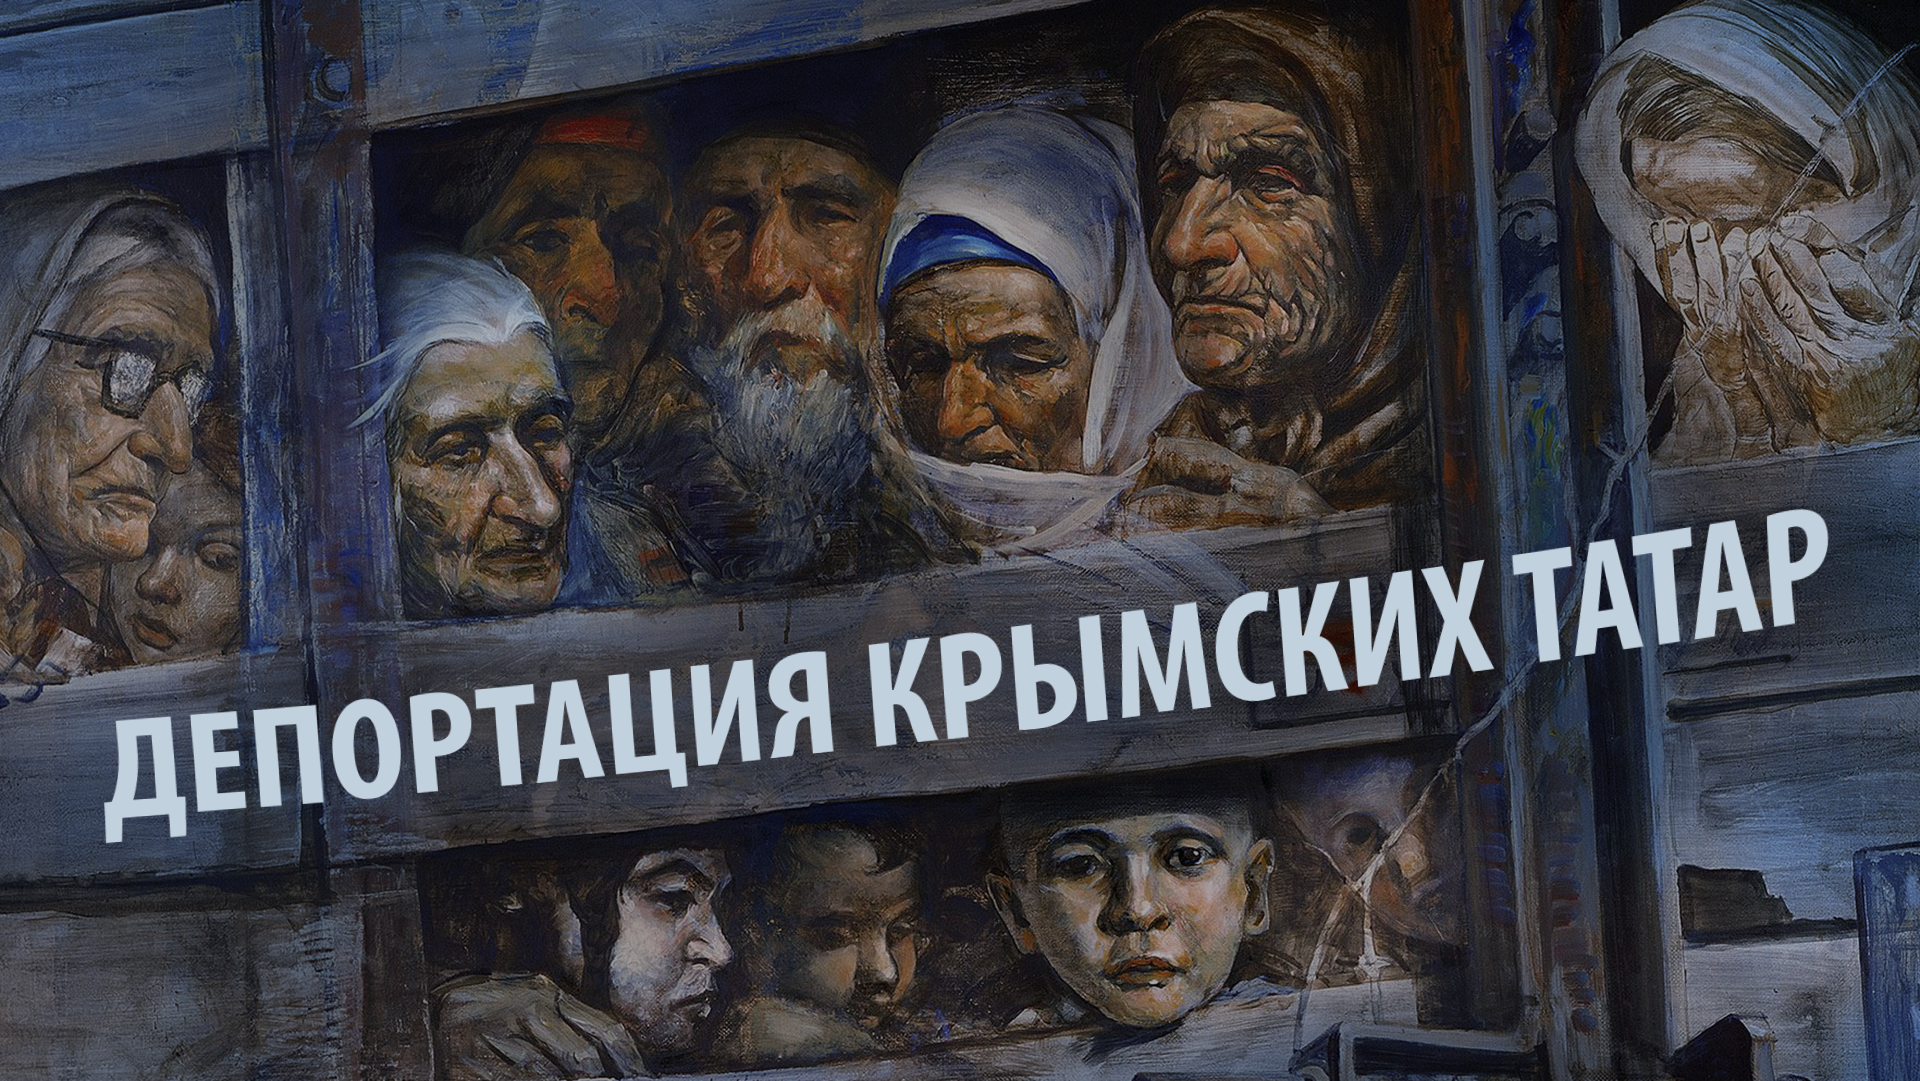 Геноцид крымскотатарского народа - преступление без срока давности - фото 1